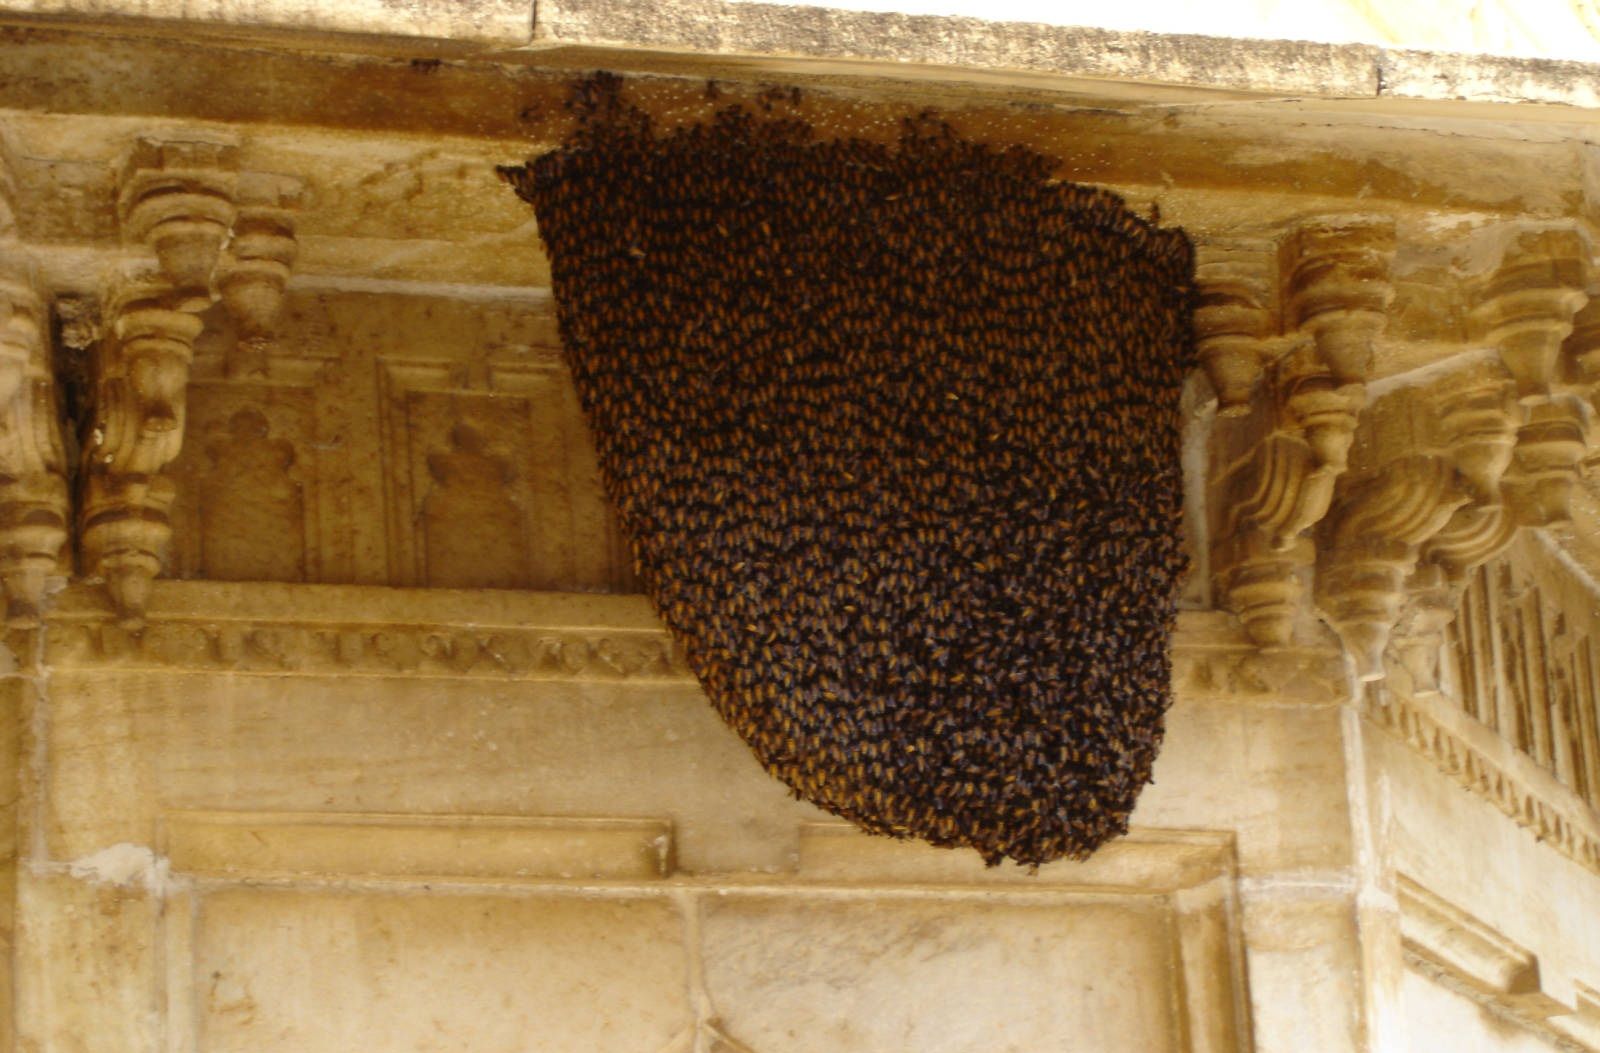 لانه زنبور عسل زیر سقف یک منزل